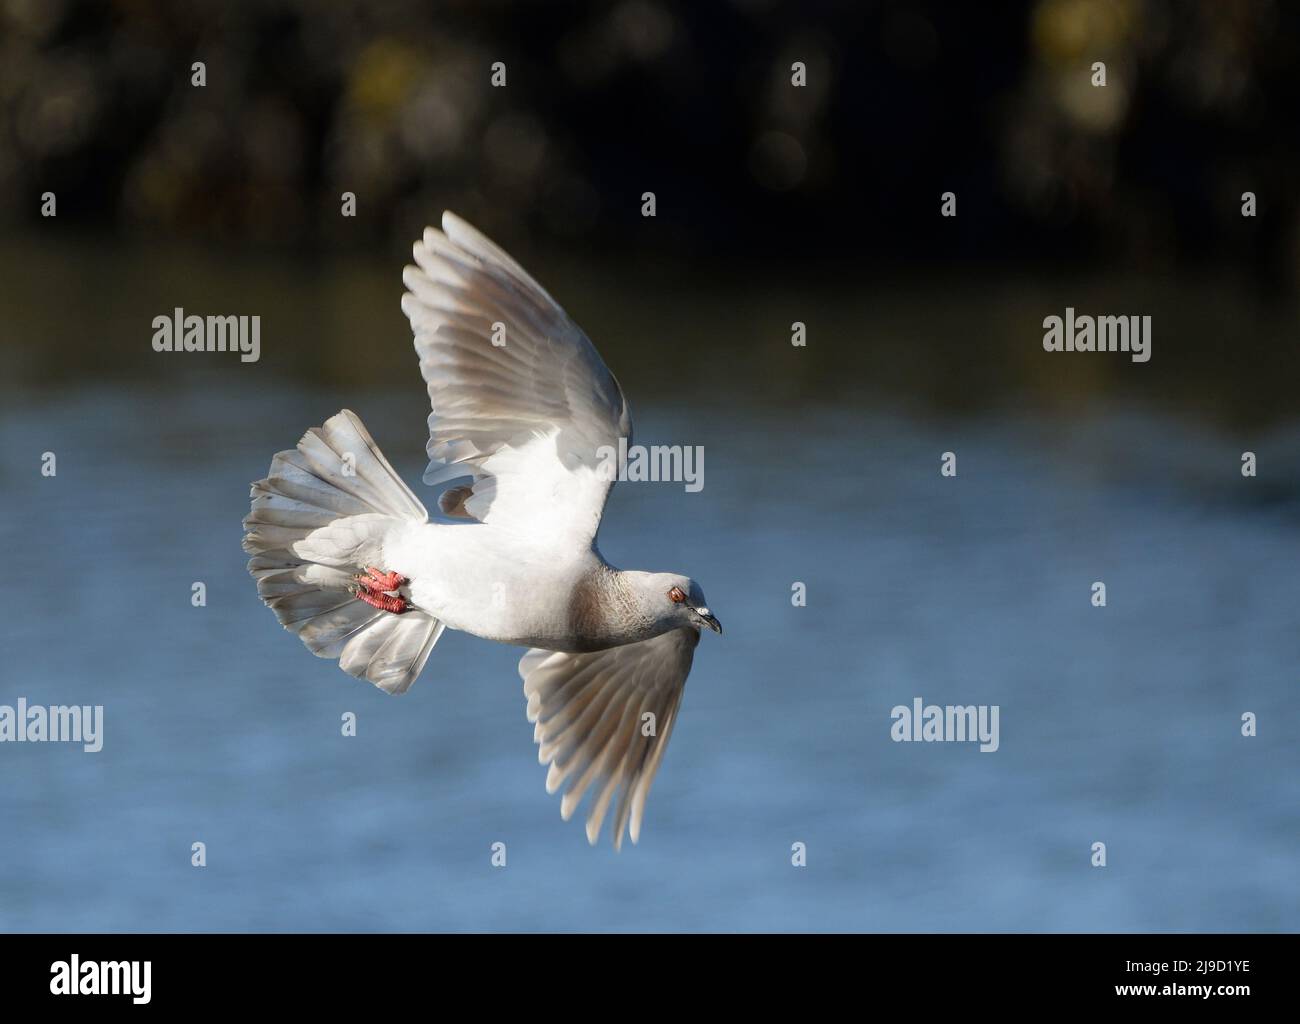 Dove in flight over the Douro River Stock Photo